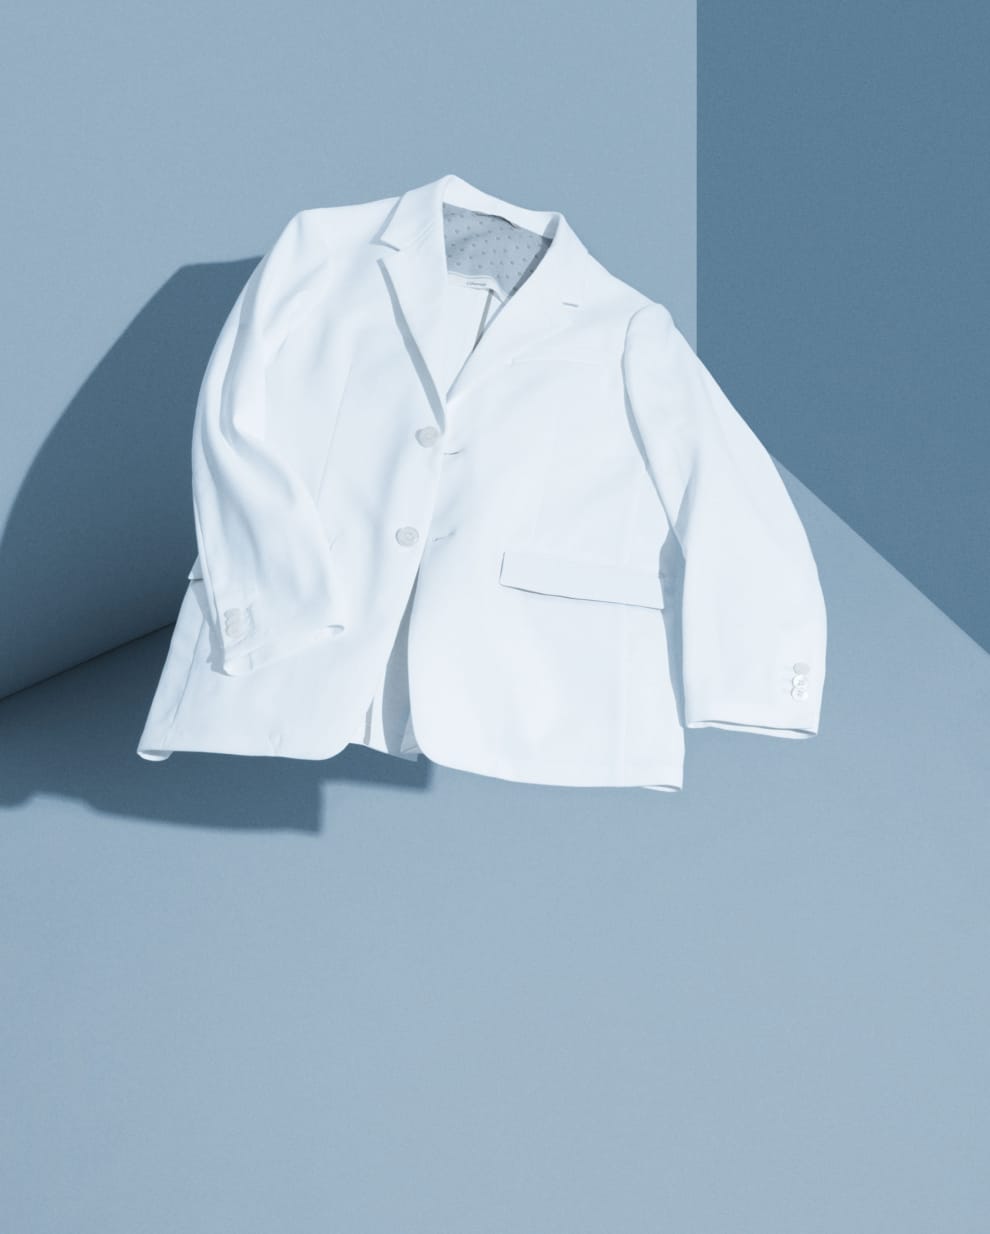 クラシコ史上最も軽いライトシリーズのジャケット白衣